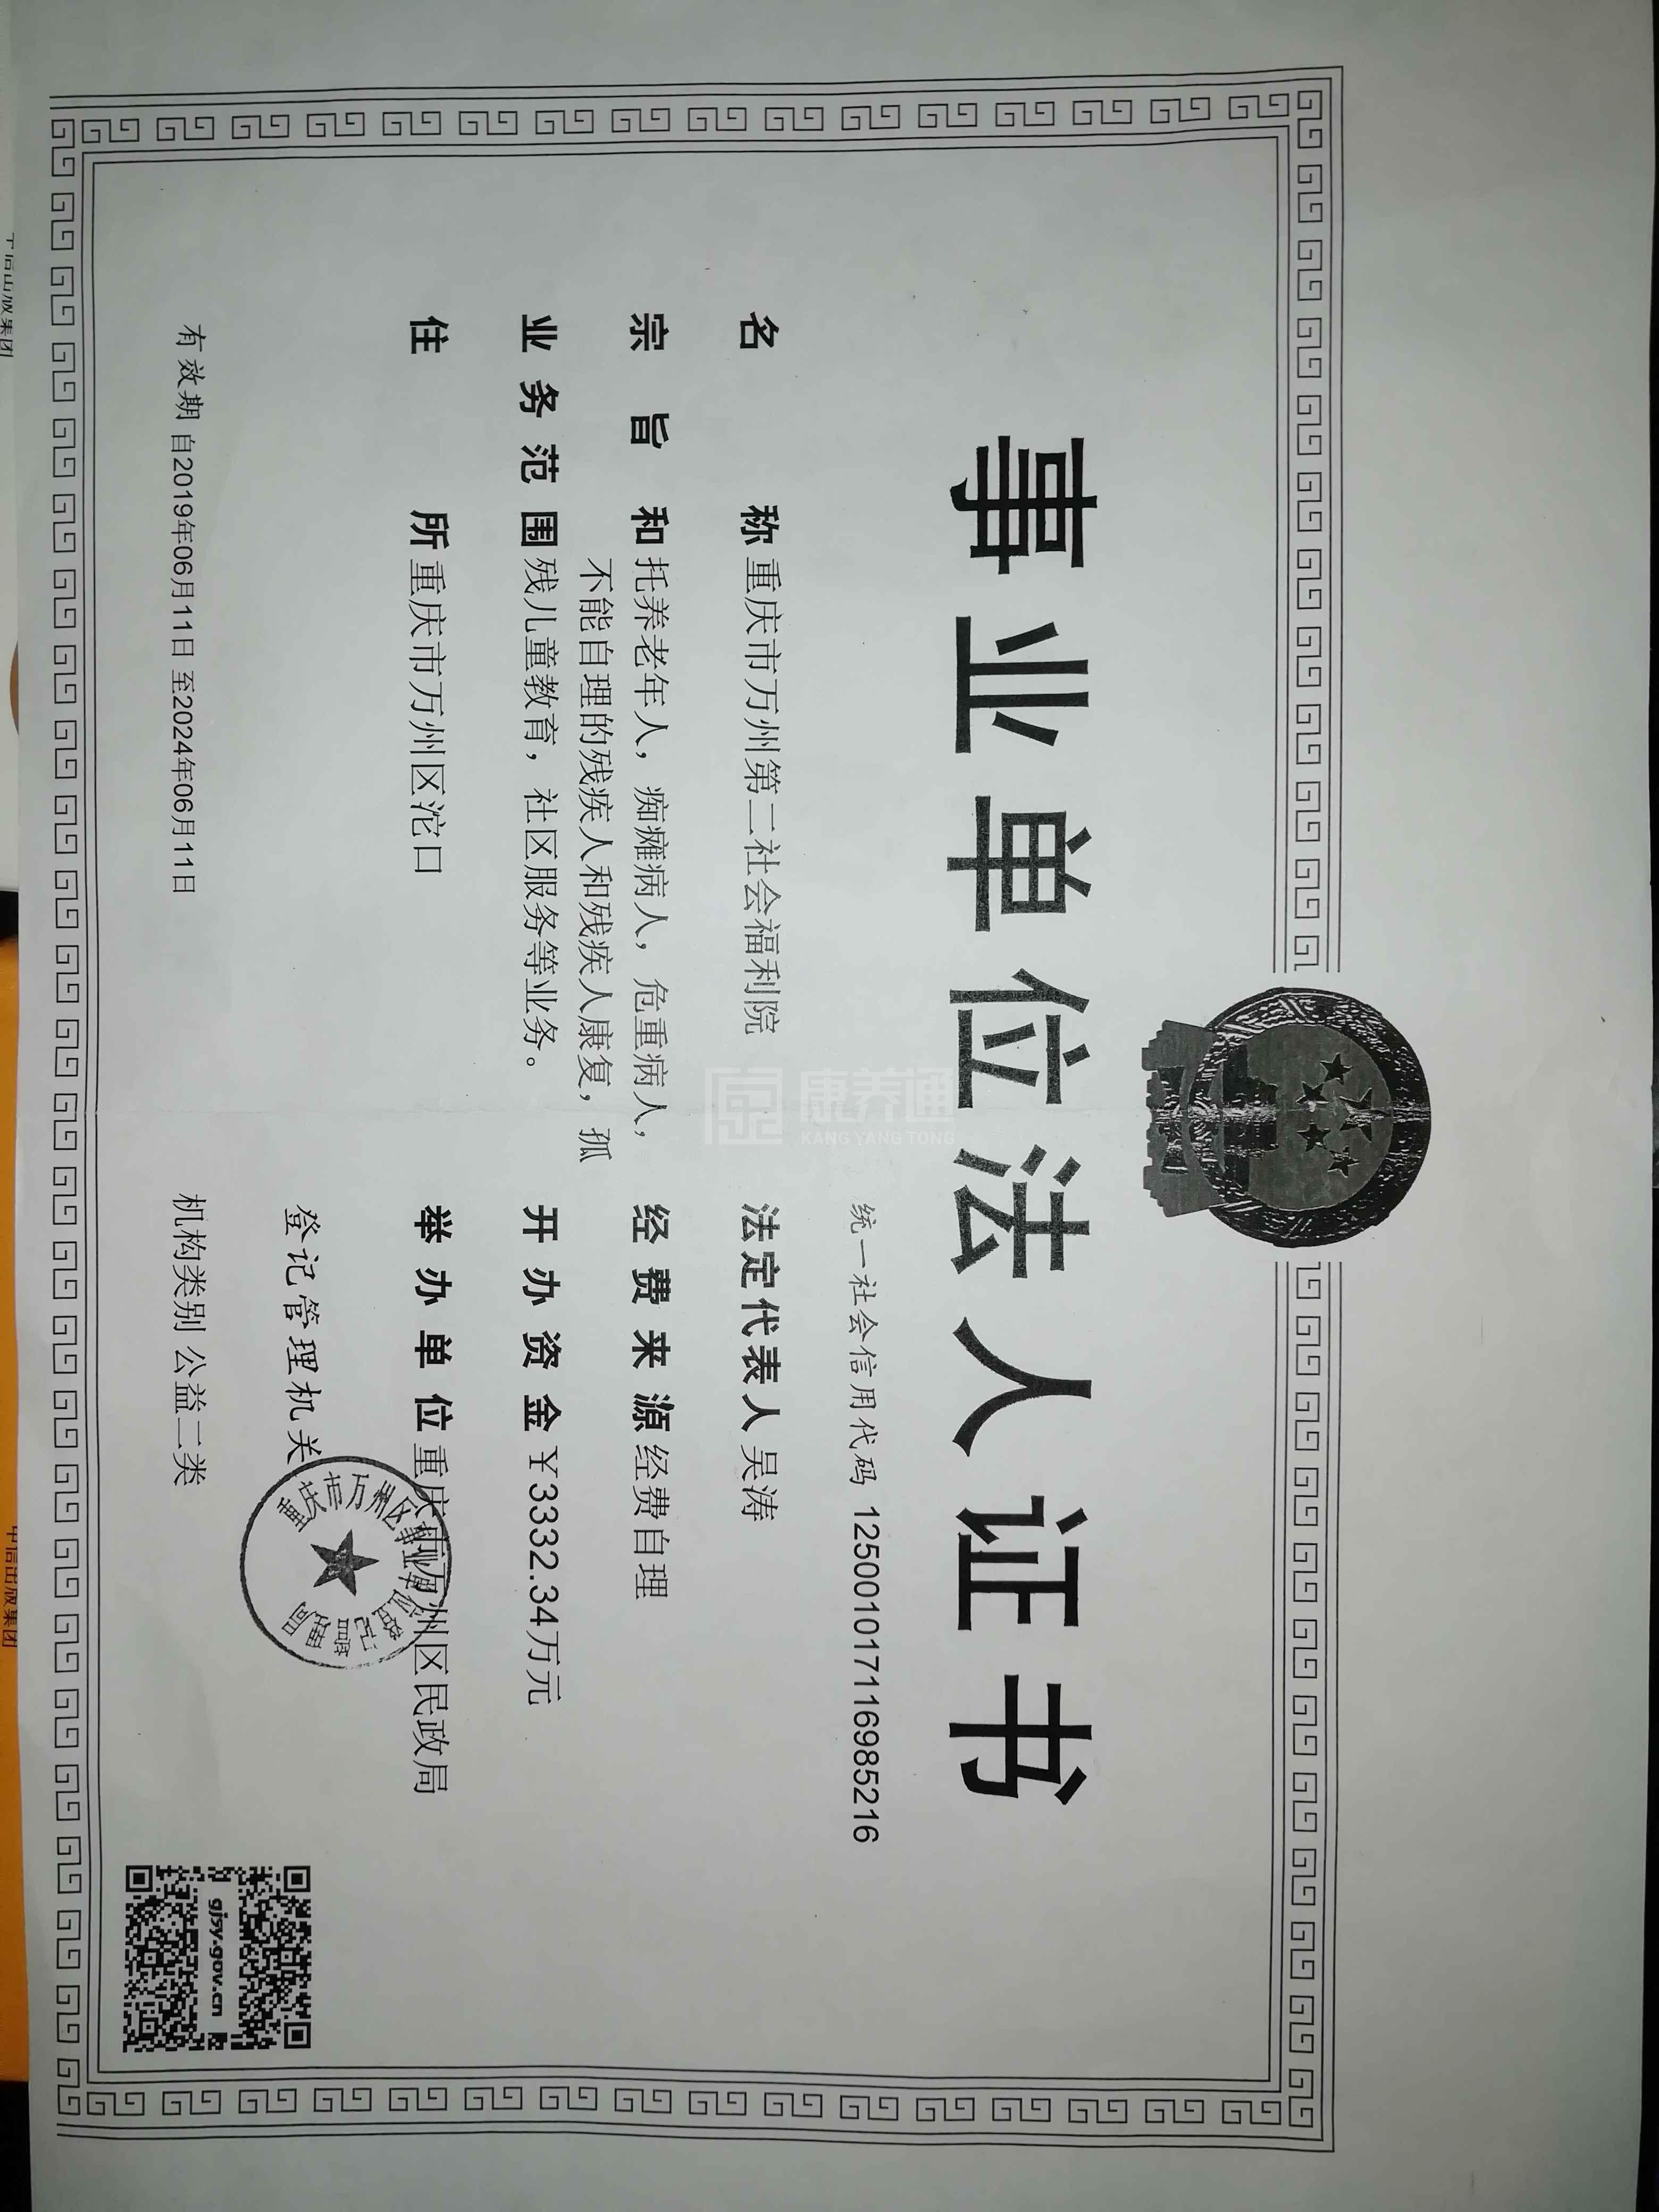 重庆市万州区长岭镇敬老院服务项目图2亦动亦静、亦新亦旧